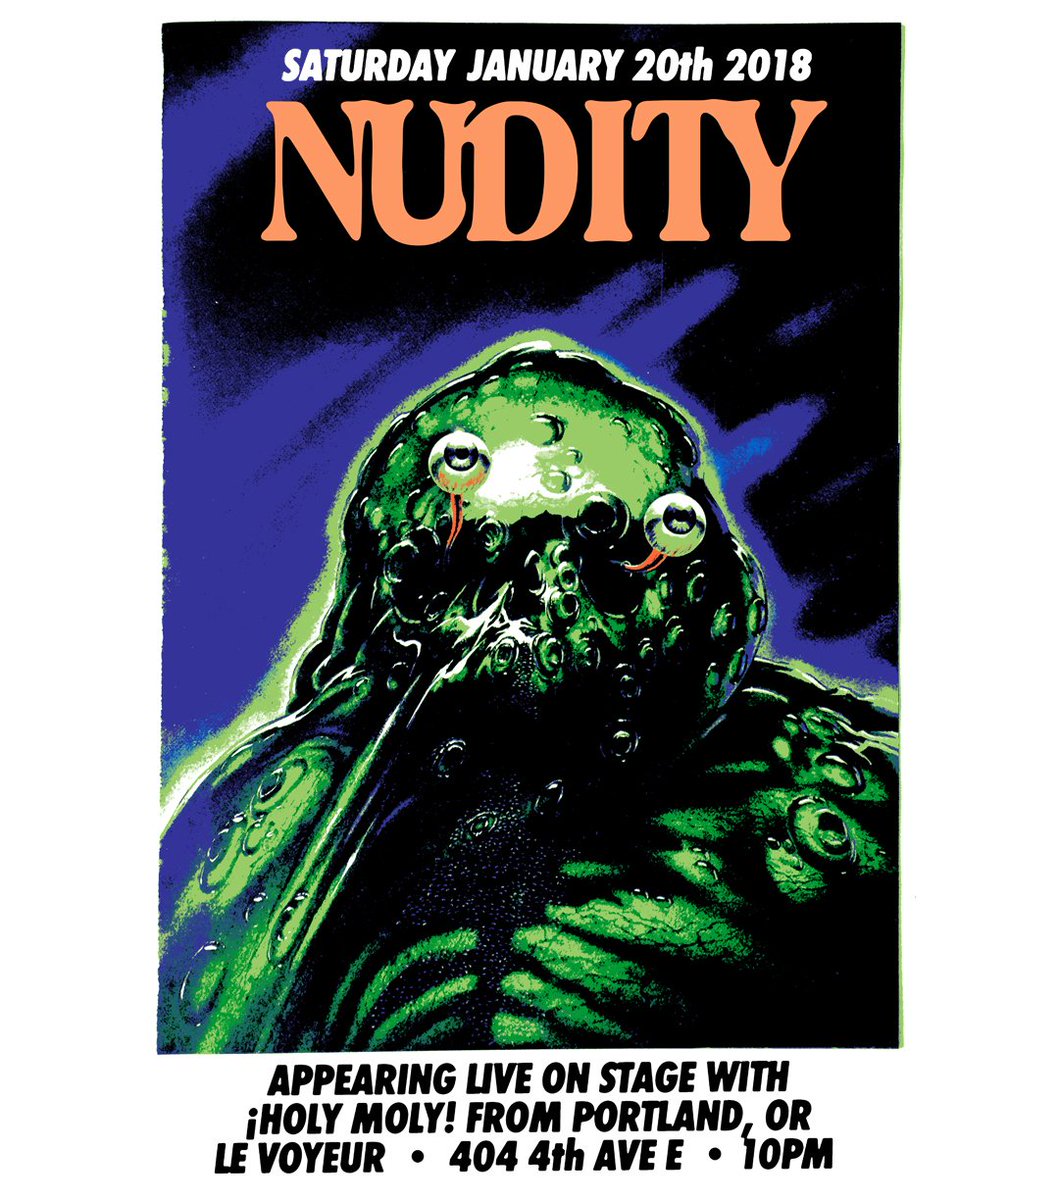 Green Nudist Voyeur - Nudity (@NudityJammers) | Twitter